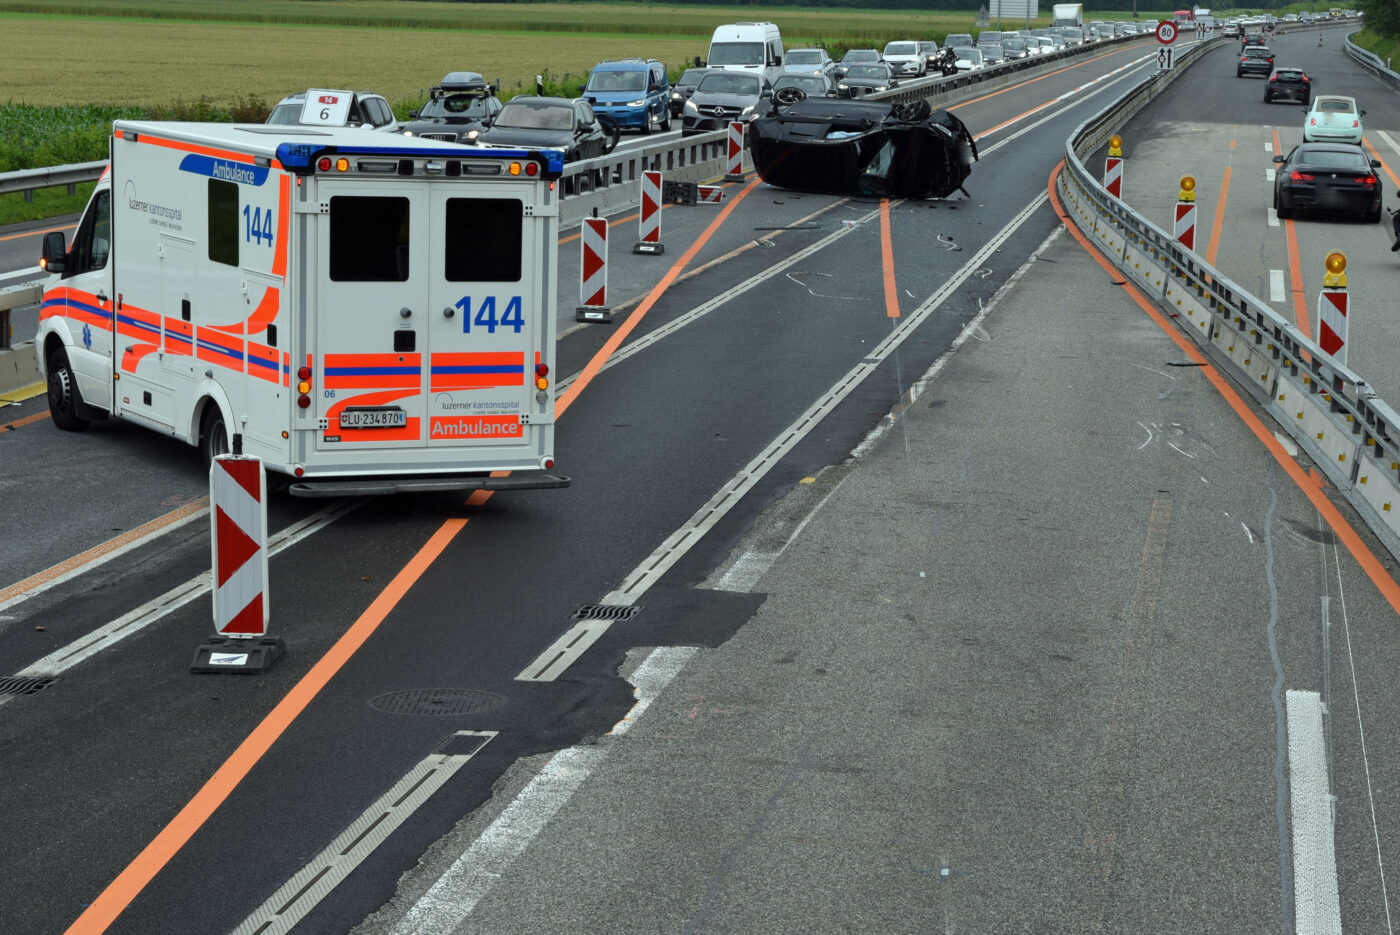 Zwei Selbstunfälle auf der Autobahn – zwei Personen verletzt